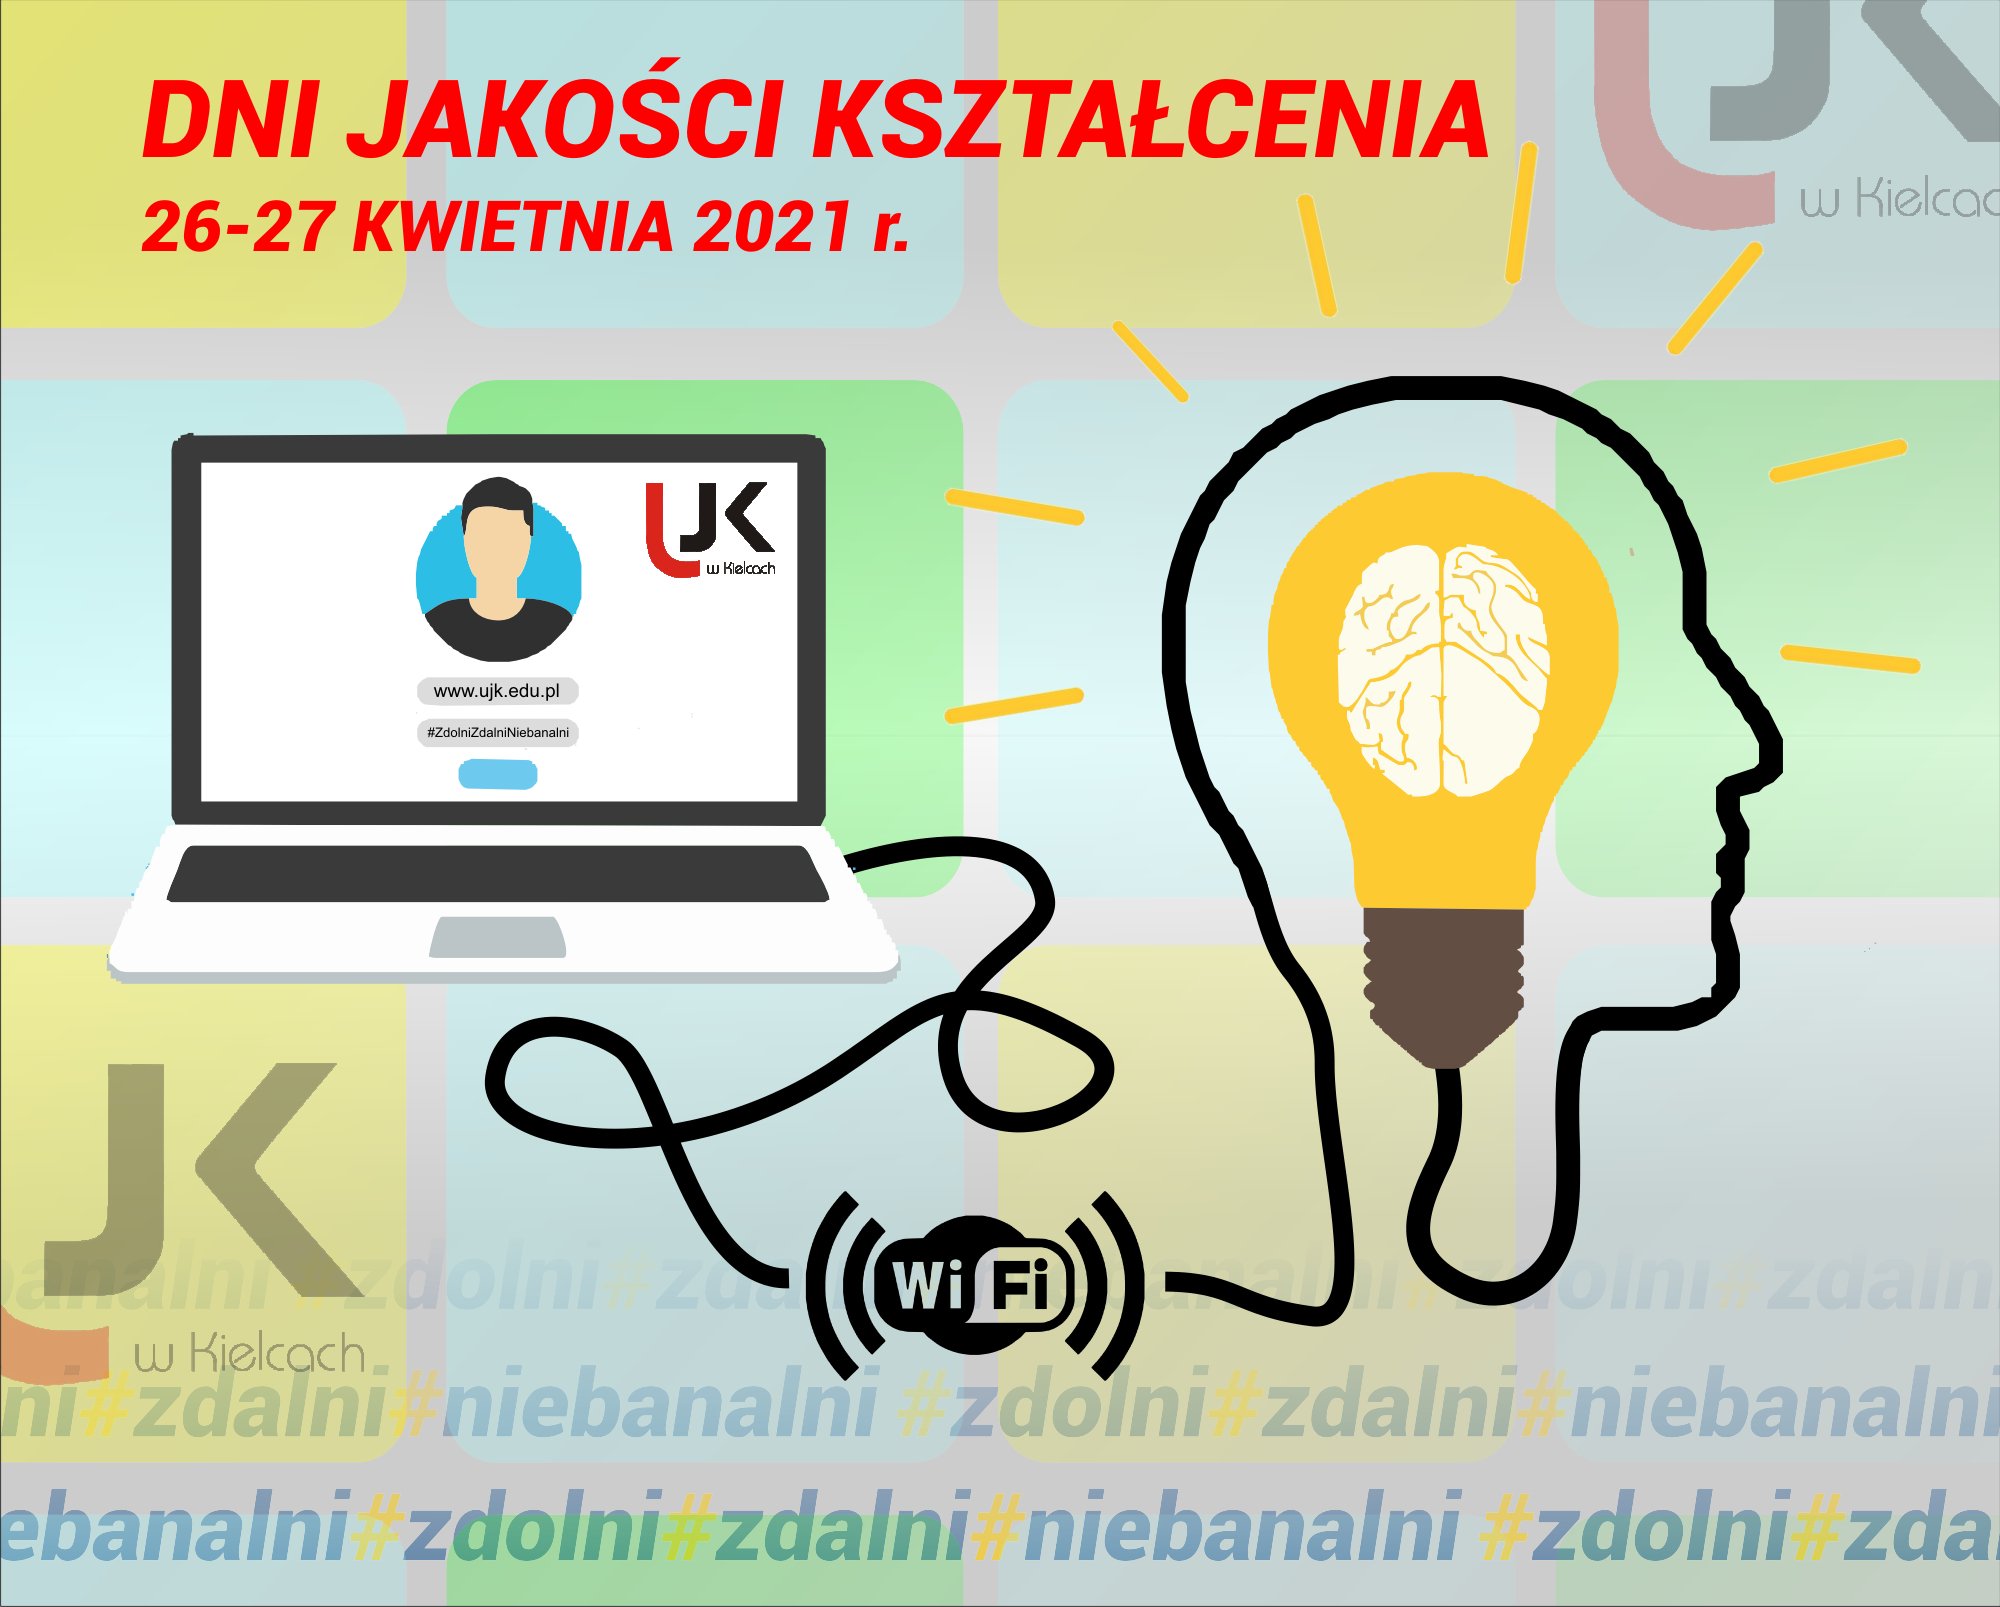 DJK-2021-plakat Dni Jakości Kształcenia - 26-27 kwietnia 2021 